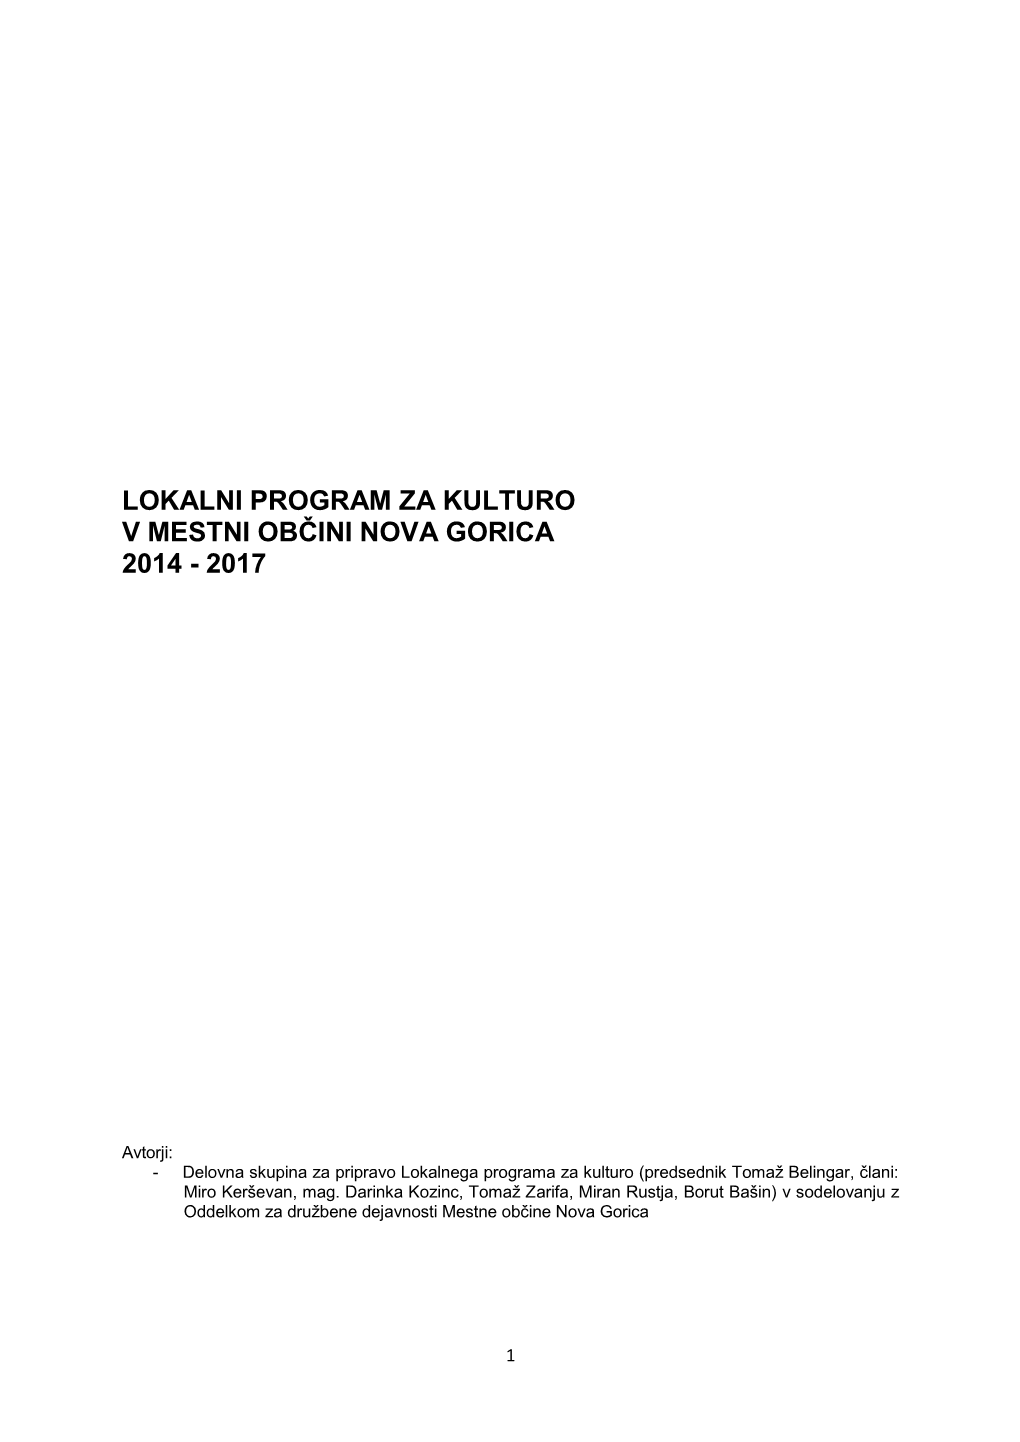 Lokalni Program Za Kulturo V Mestni Občini Nova Gorica 2014-2017